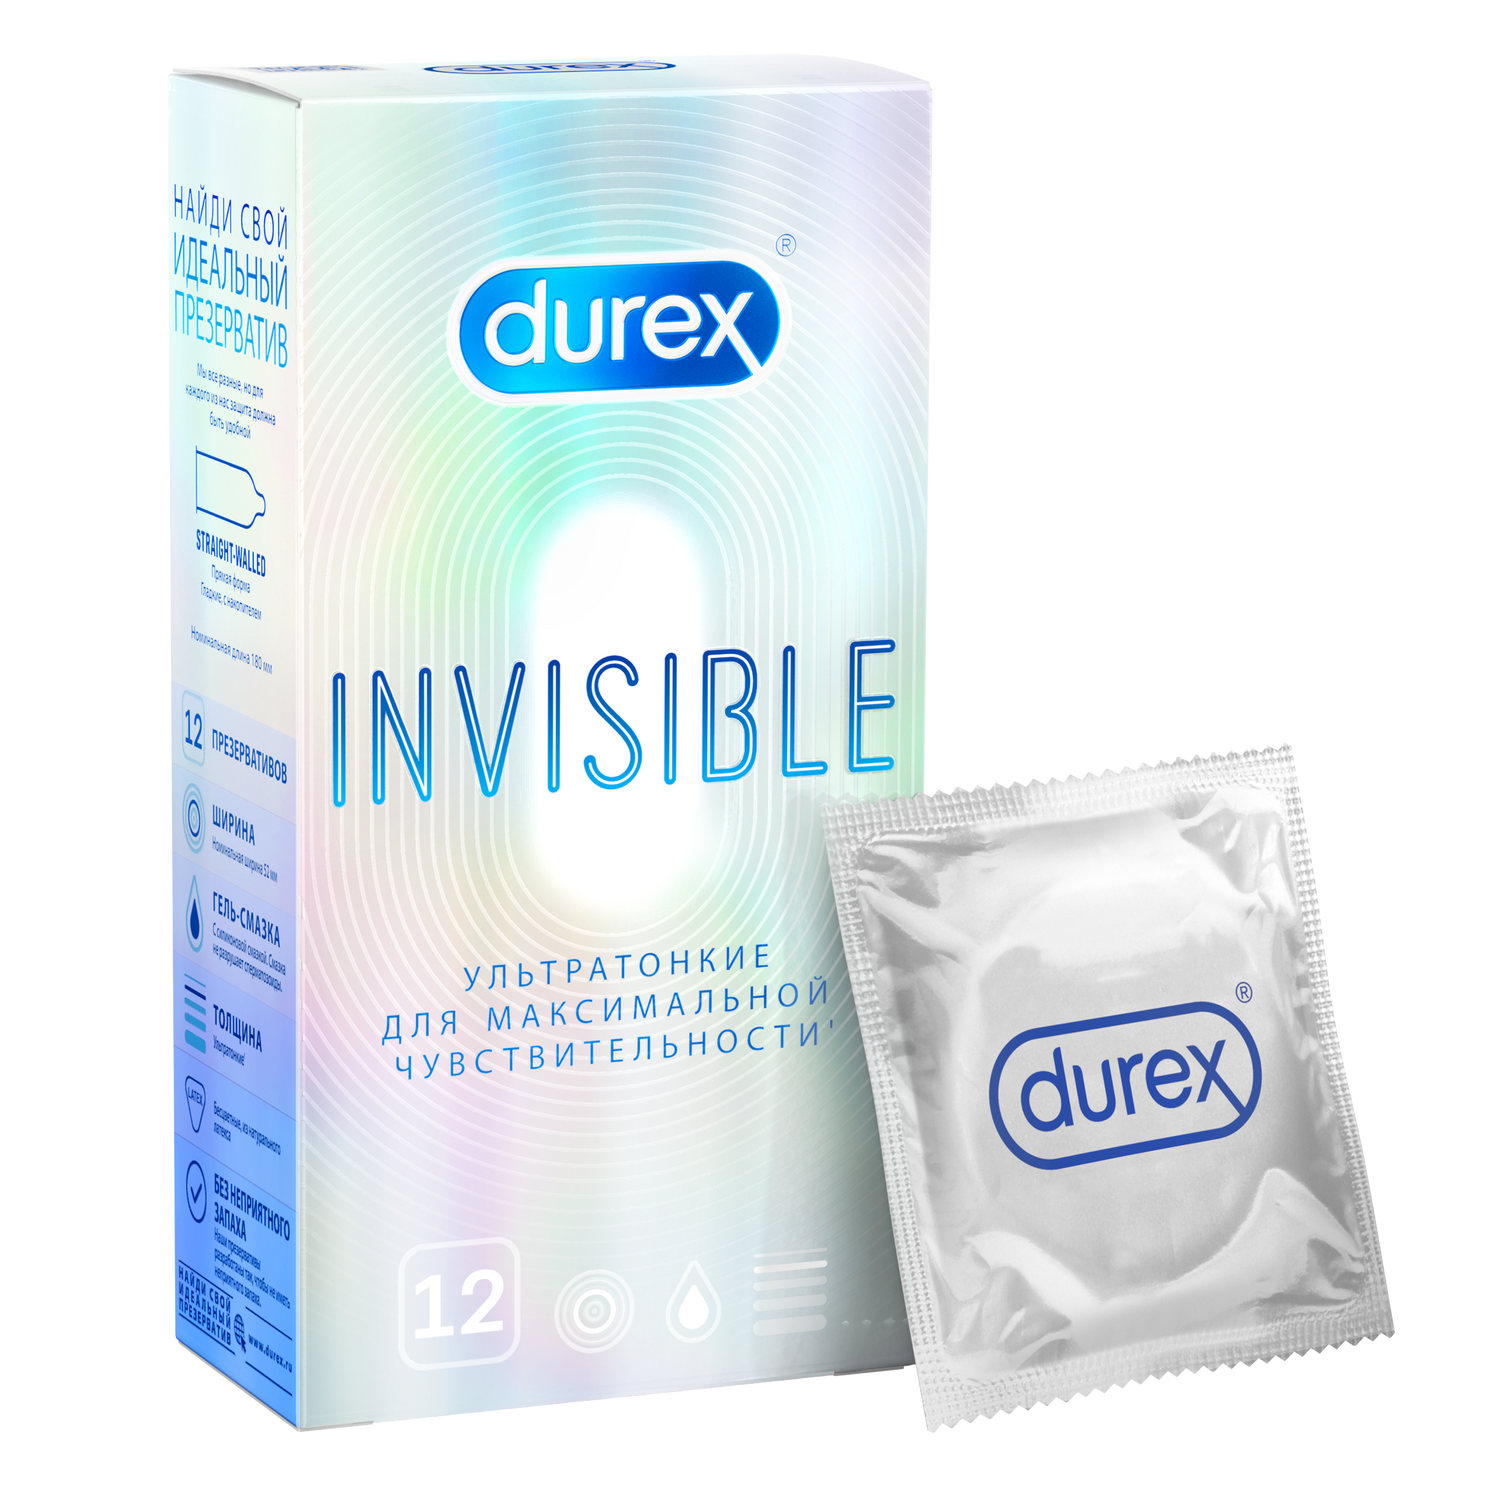 Презервативы Durex Invisible ультратонкие, 12 шт. презервативы luxe exclusive поцелуй ангела 1 шт